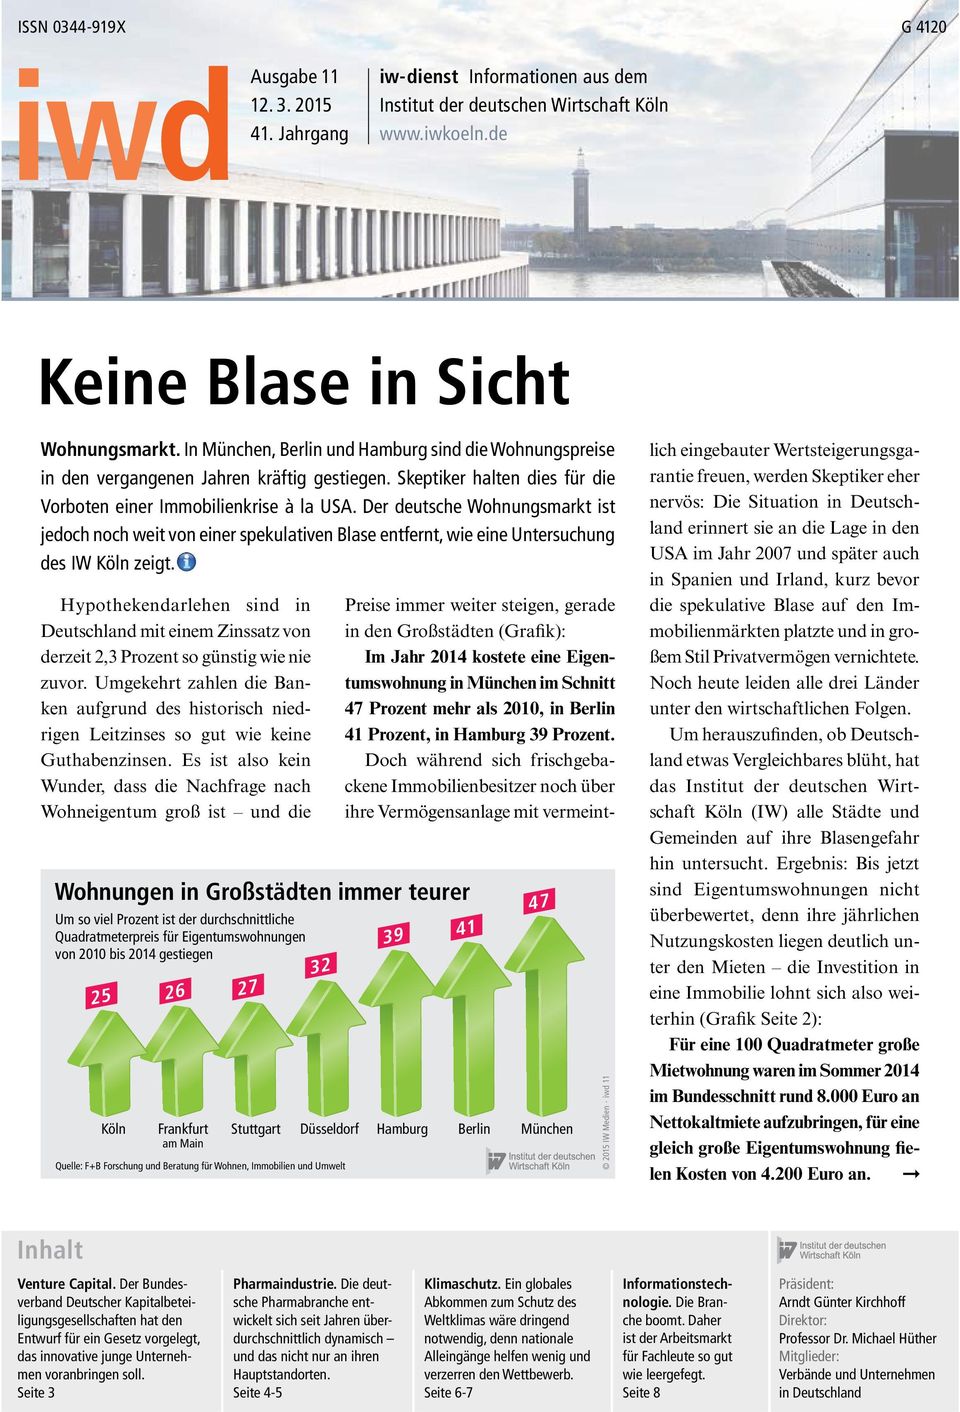 Der deutsche Wohnungsmarkt ist jedoch noch weit von einer spekulativen Blase entfernt, wie eine Untersuchung des IW Köln zeigt.